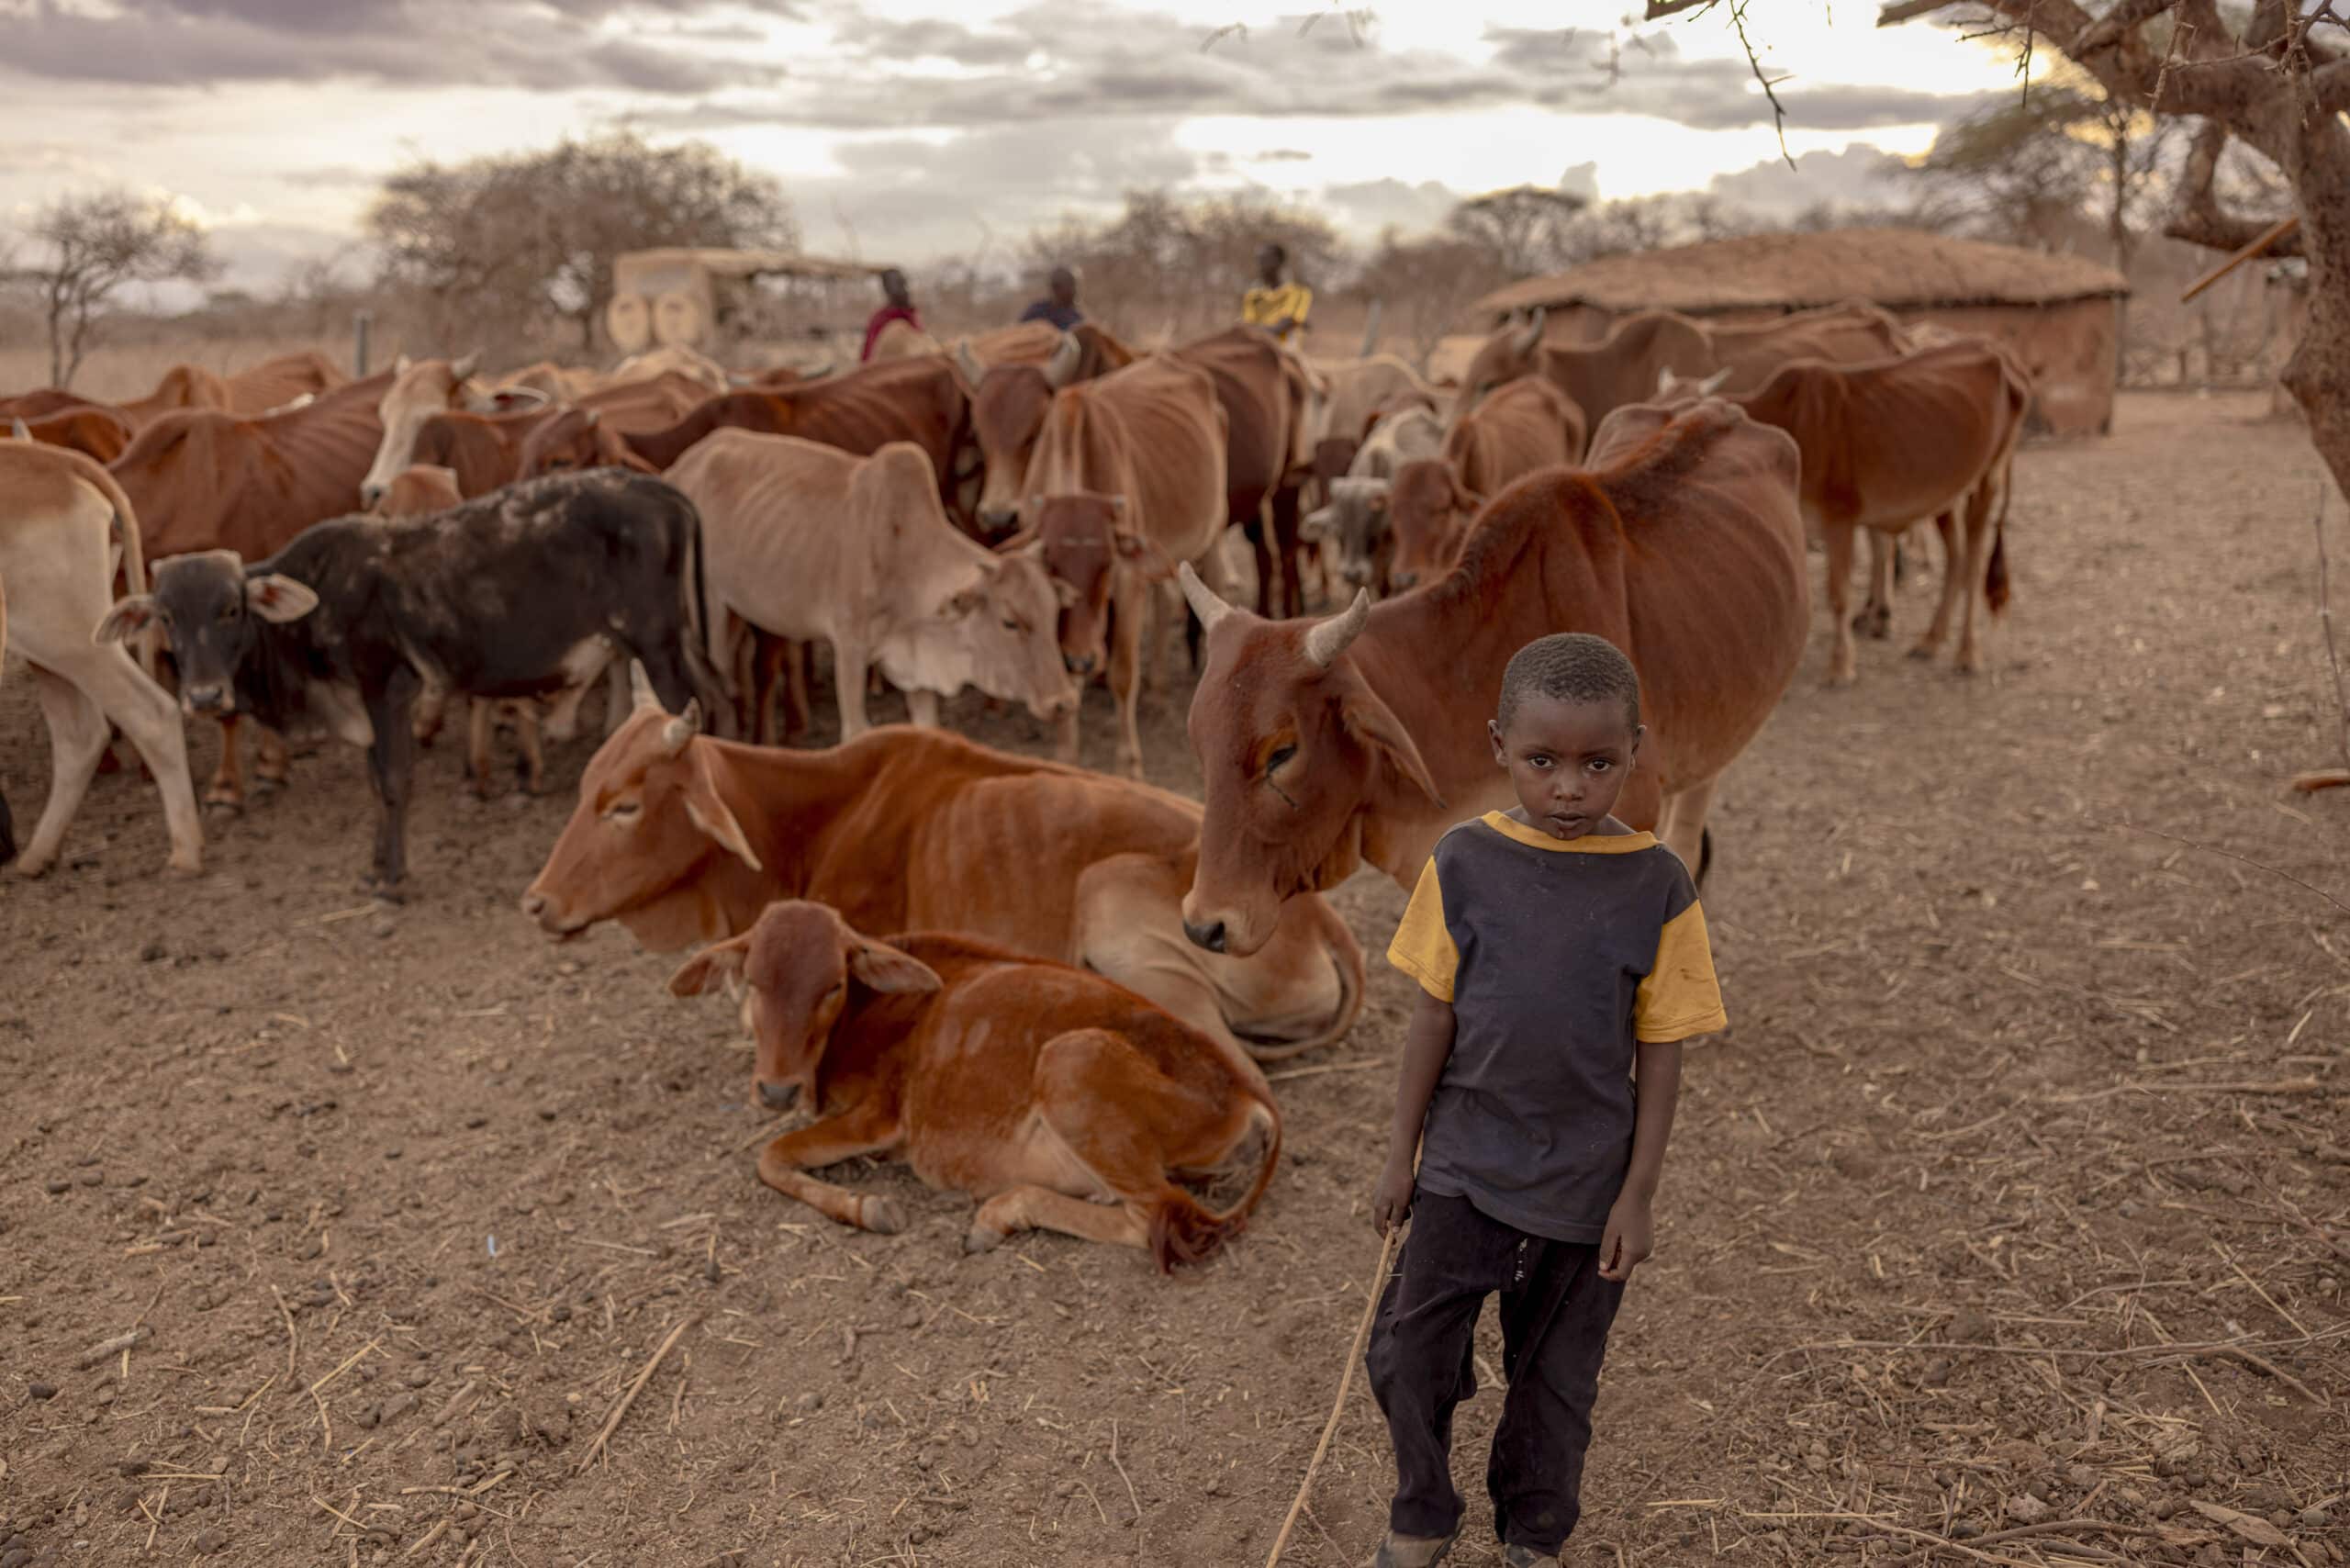 Ein kleiner Junge steht inmitten einer Viehherde in einer ländlichen Umgebung. Um ihn herum sitzen oder stehen mehrere Kühe. Im Hintergrund sind rustikale Hütten unter einem bewölkten Himmel zu sehen. © Fotografie Tomas Rodriguez